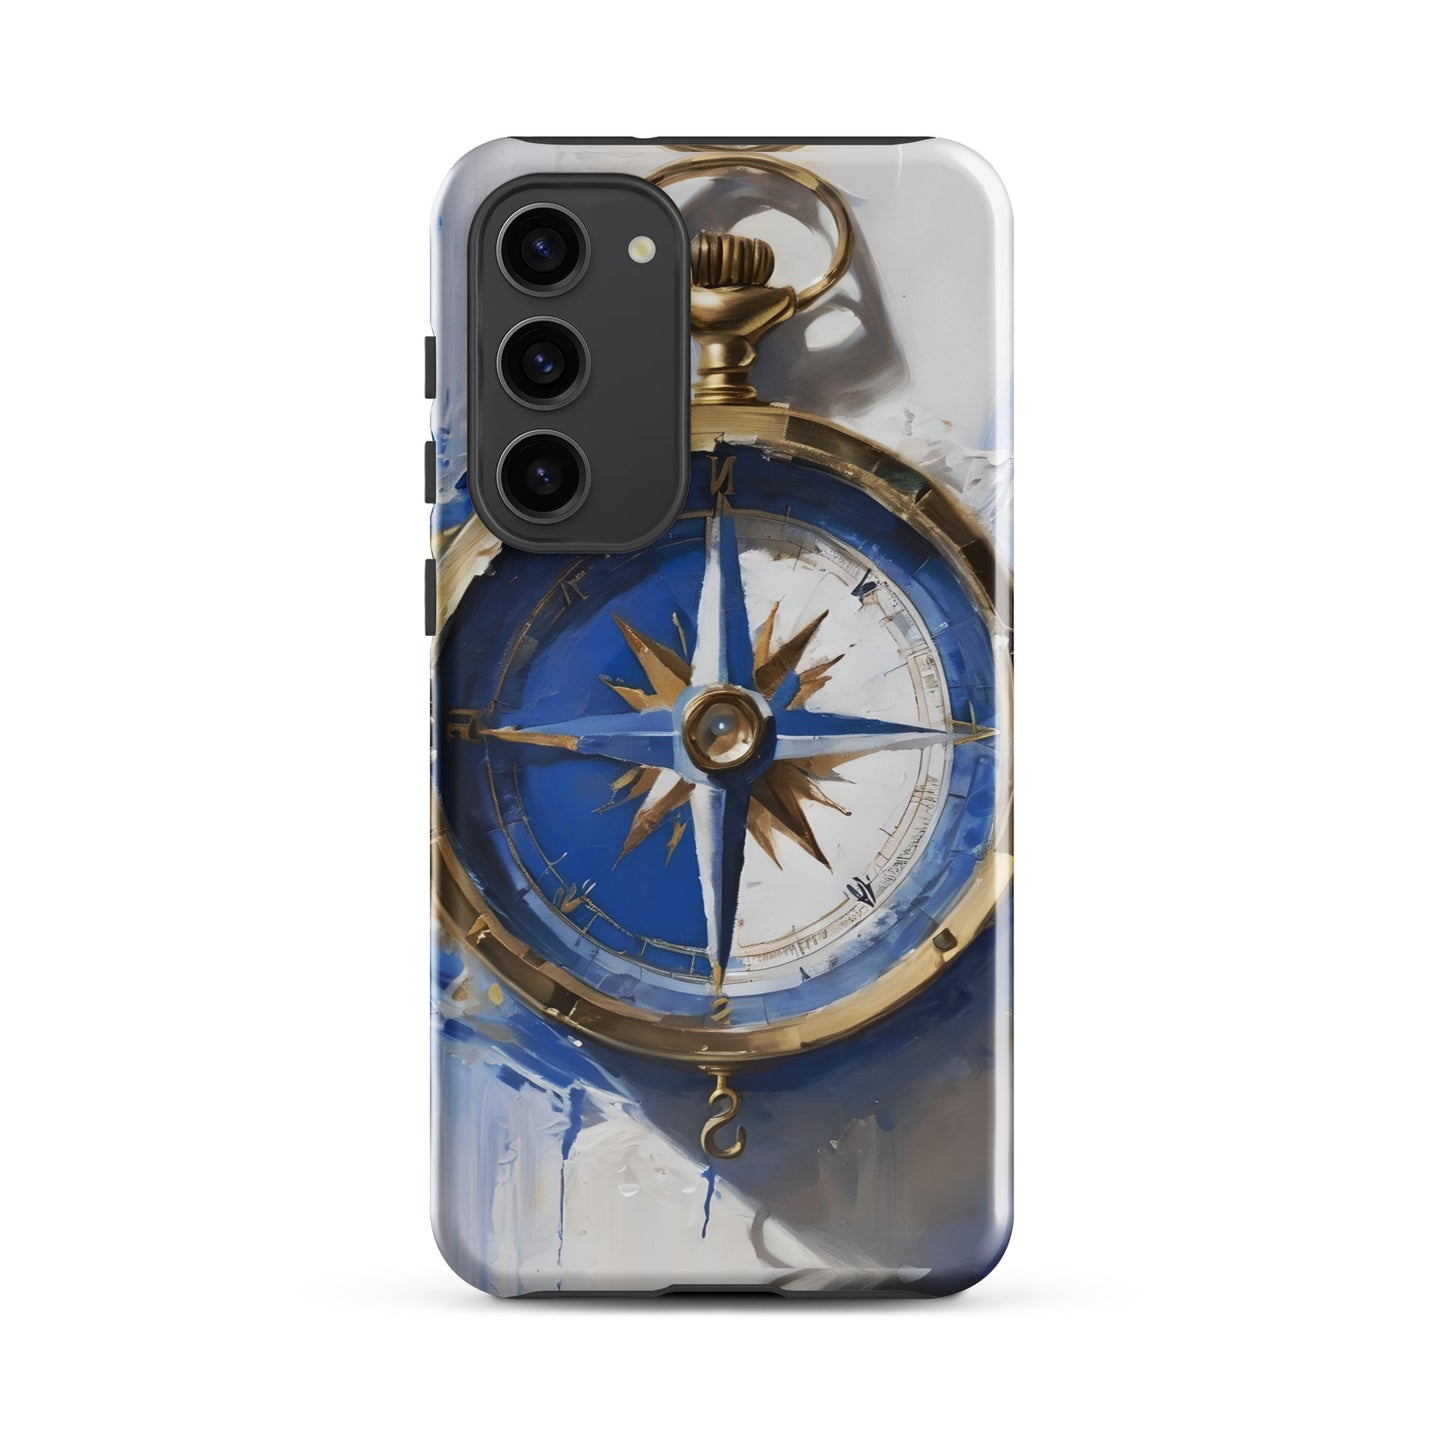 Humboldt No. 1 Compass Tough case for Samsung®